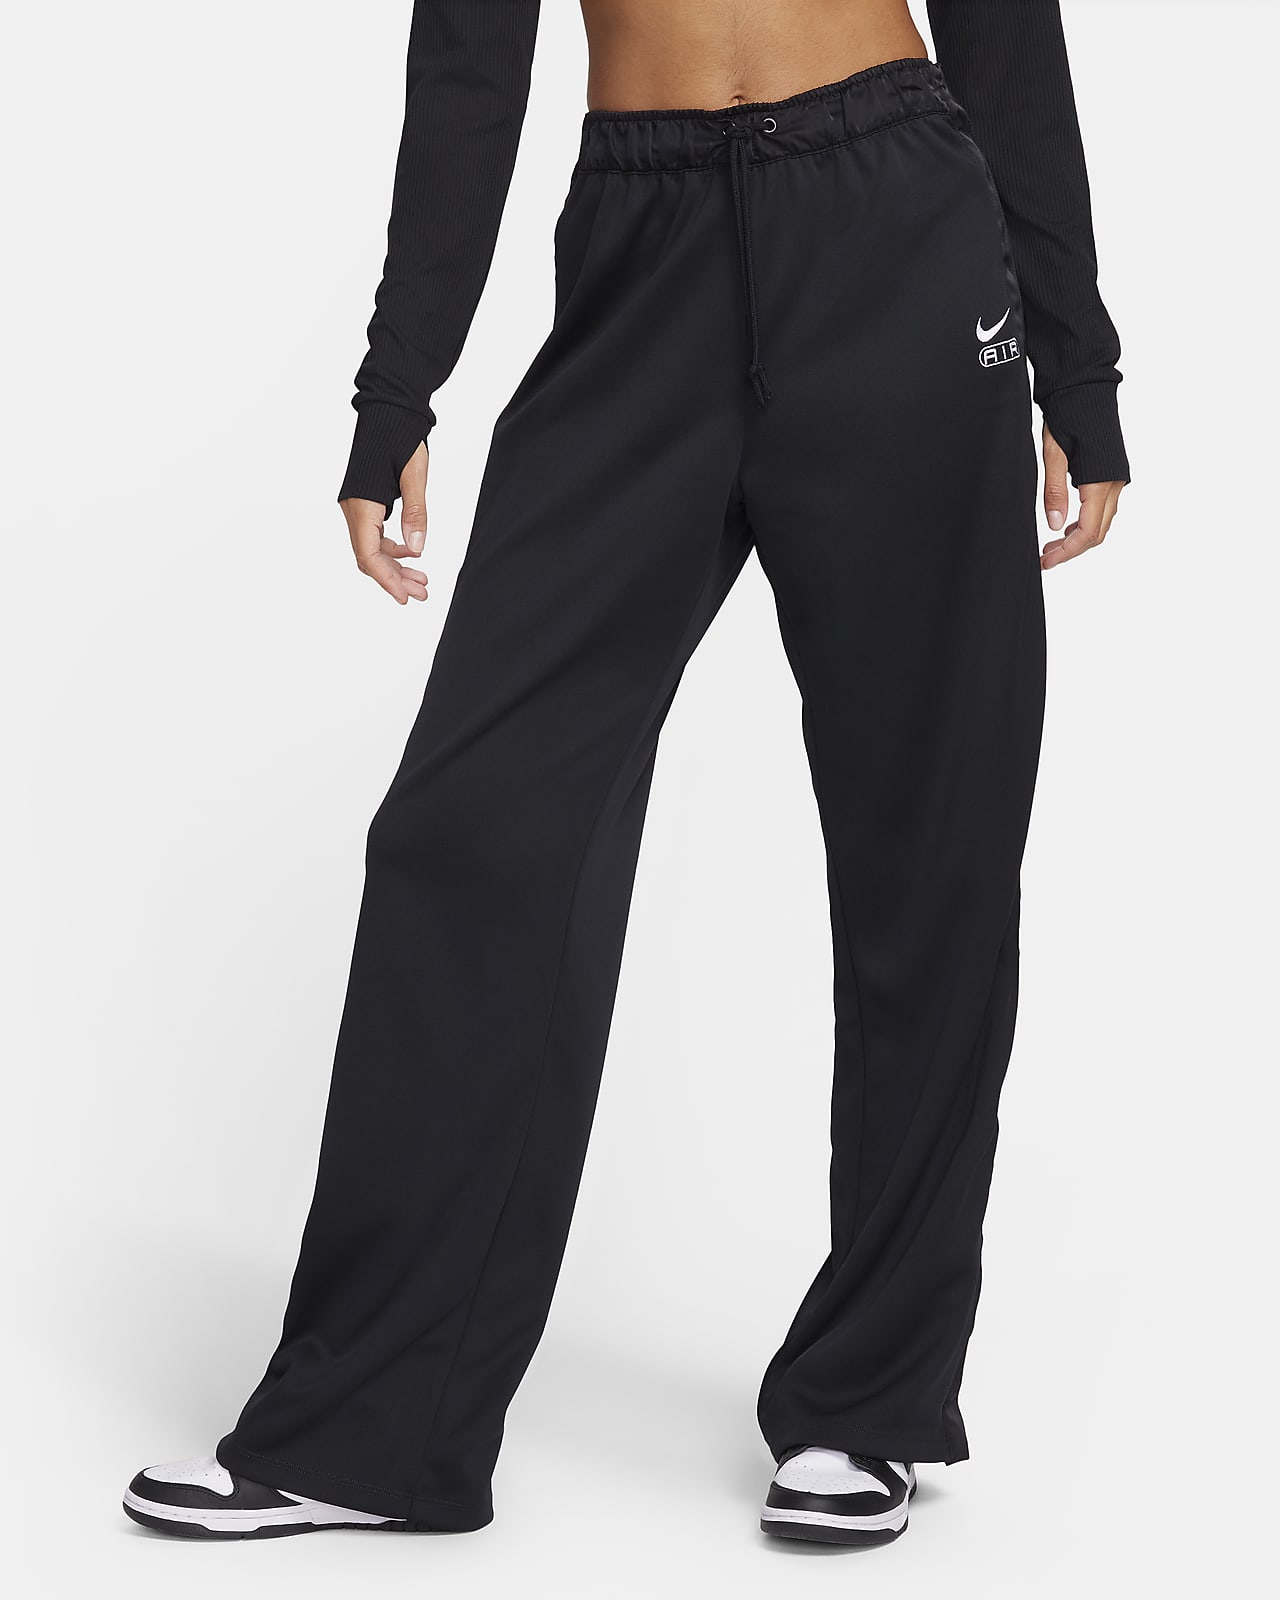 Γυναικείο παντελόνι μεσαίου ύψους με πρακτική σχεδίαση Nike Air